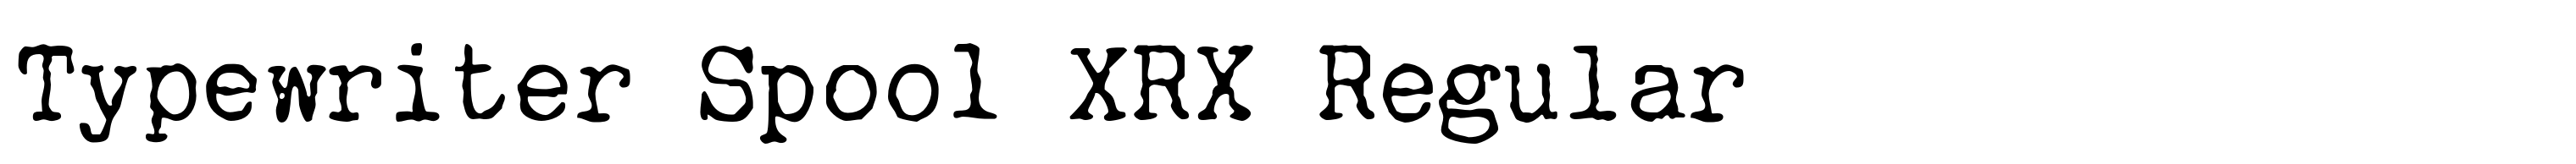 Typewriter Spool XRX Regular